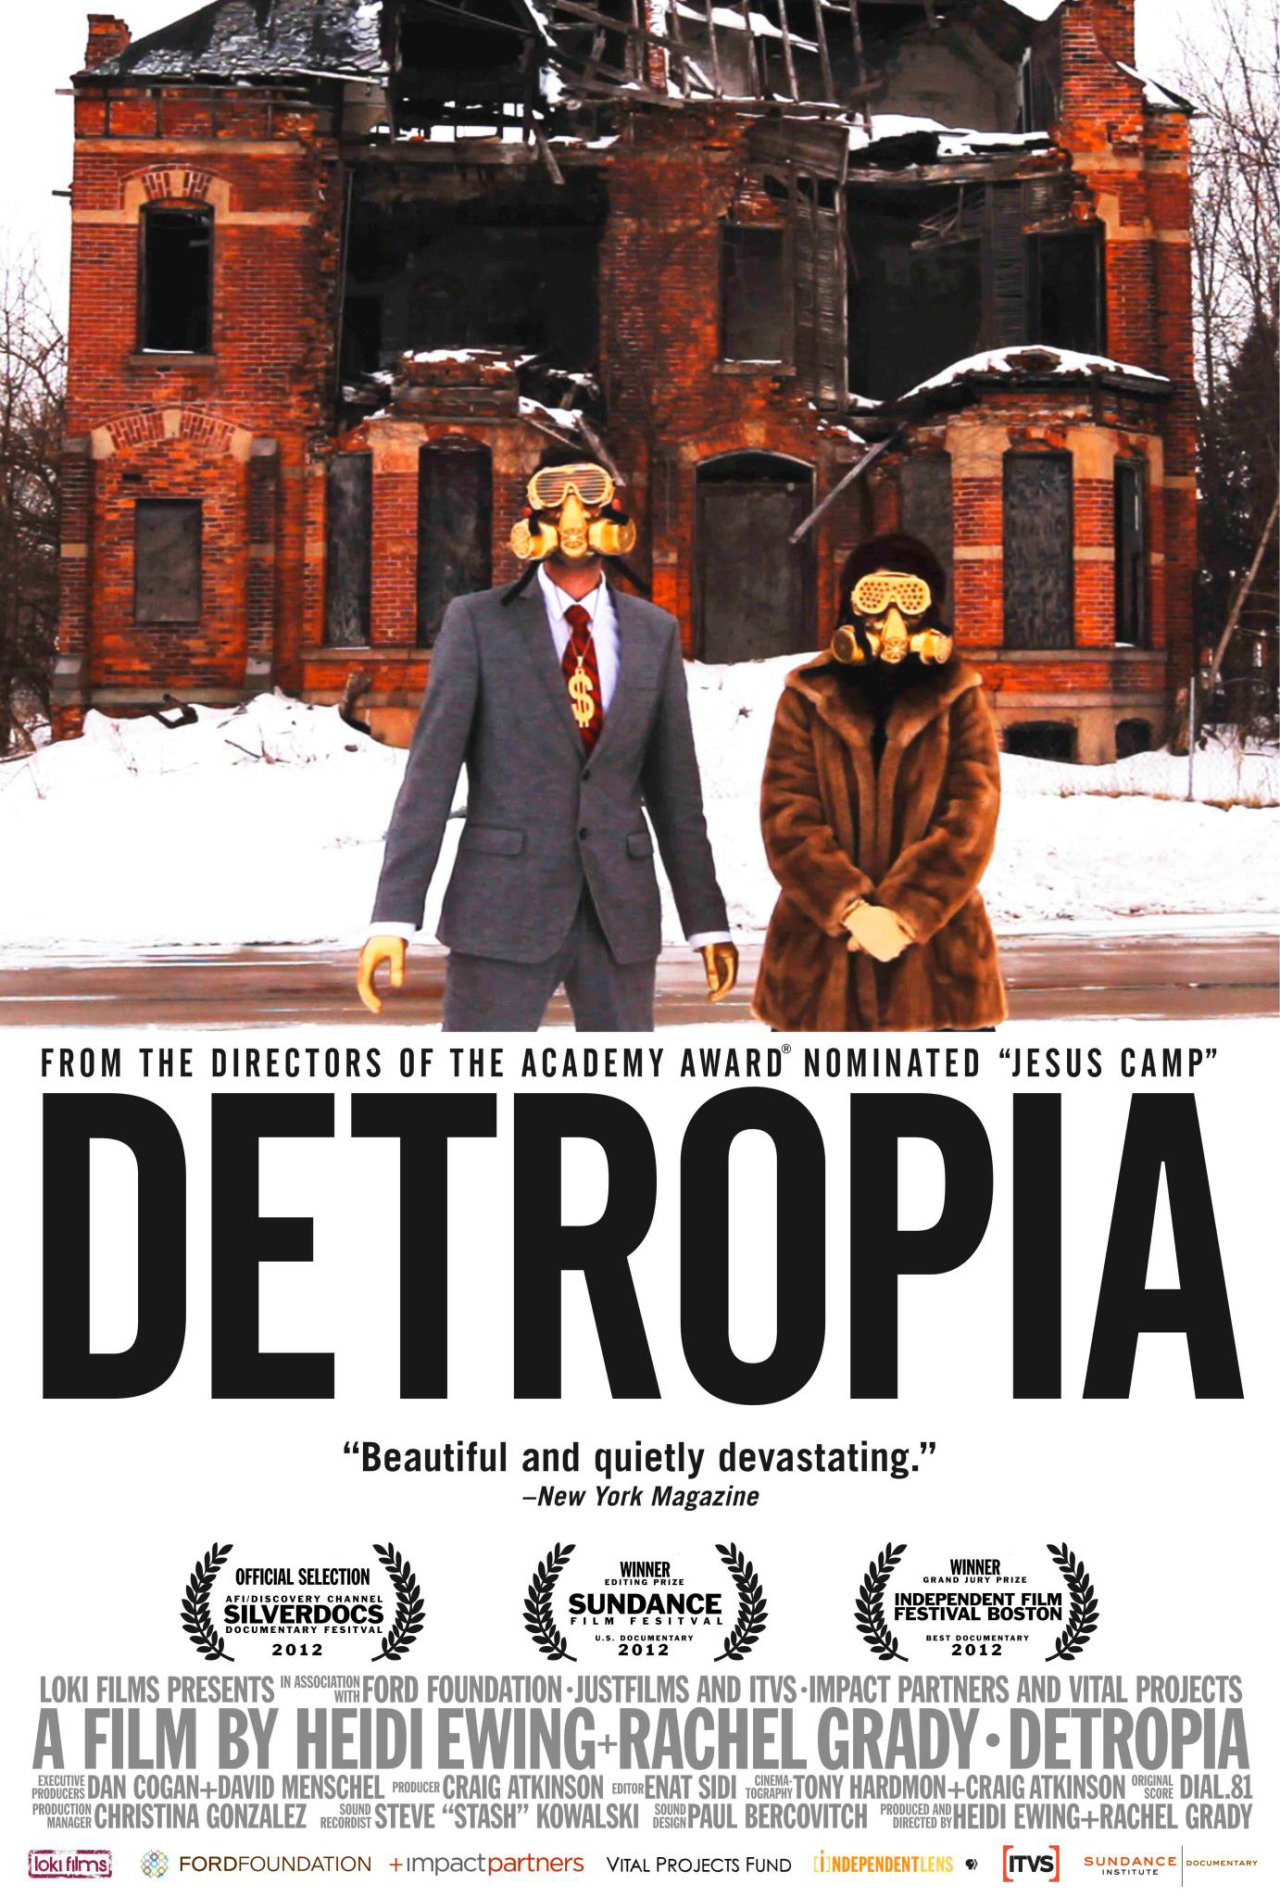 Detropia fala sobre a ruína de Detroit, uma importante cidade industrial dos Estados Unidos. Foto: Divulgação